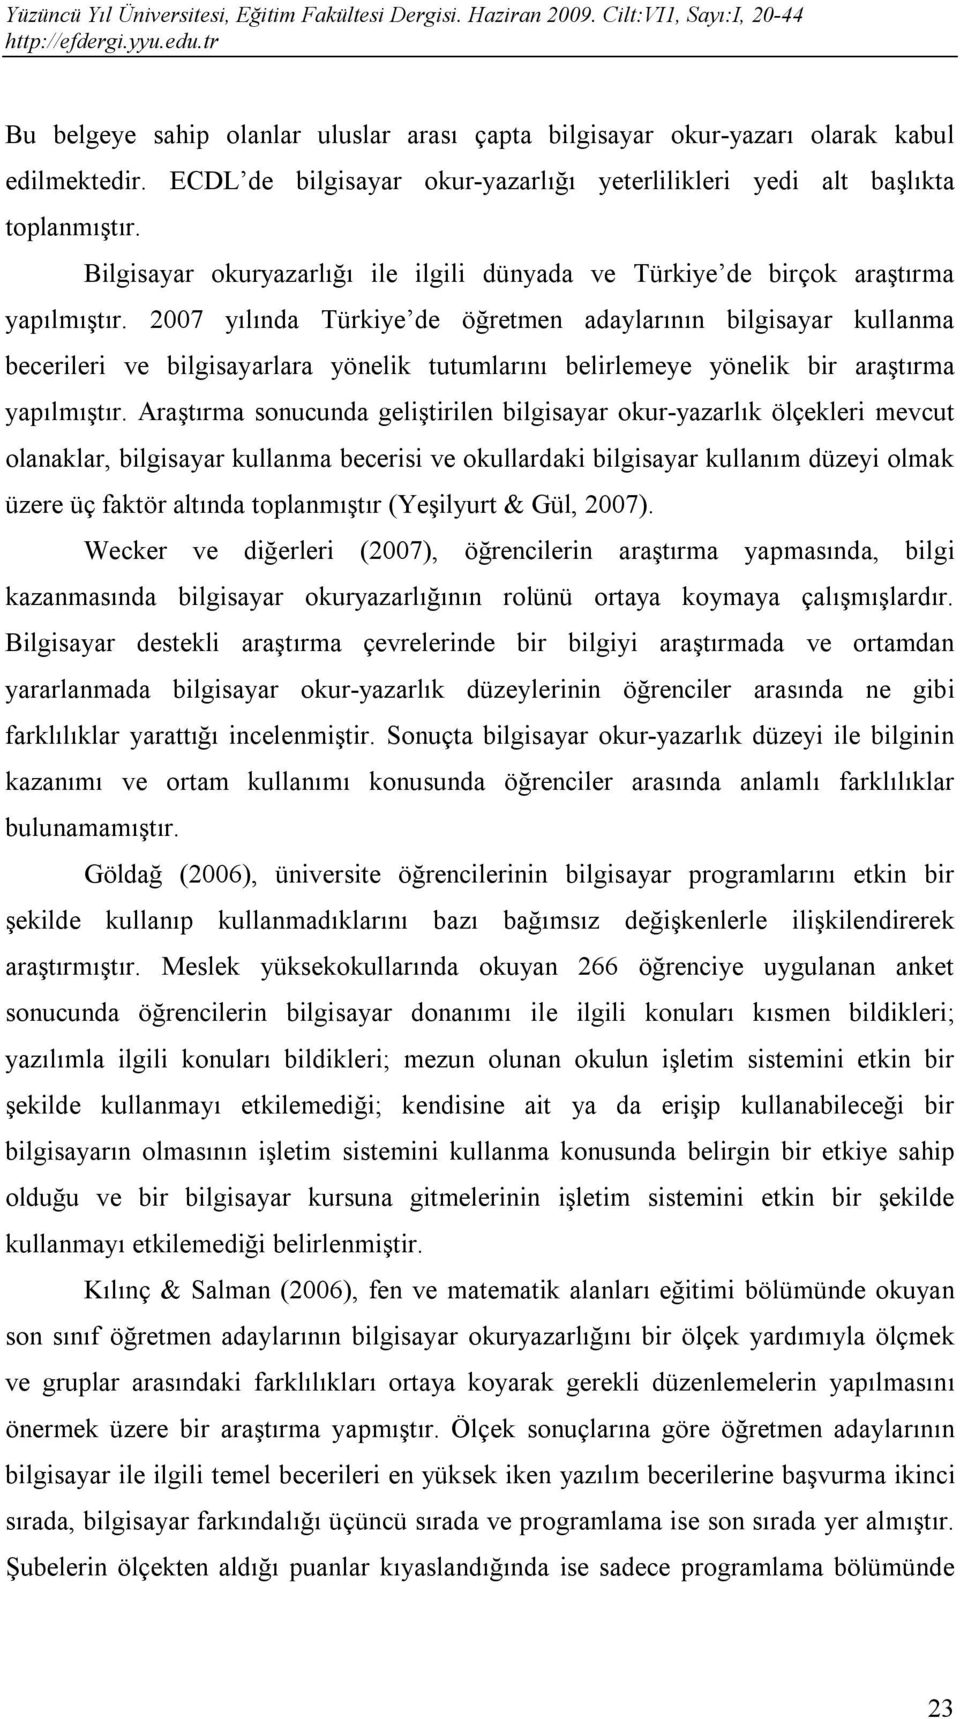 2007 yılında Türkiye de öğretmen adaylarının bilgisayar kullanma becerileri ve bilgisayarlara yönelik tutumlarını belirlemeye yönelik bir araştırma yapılmıştır.